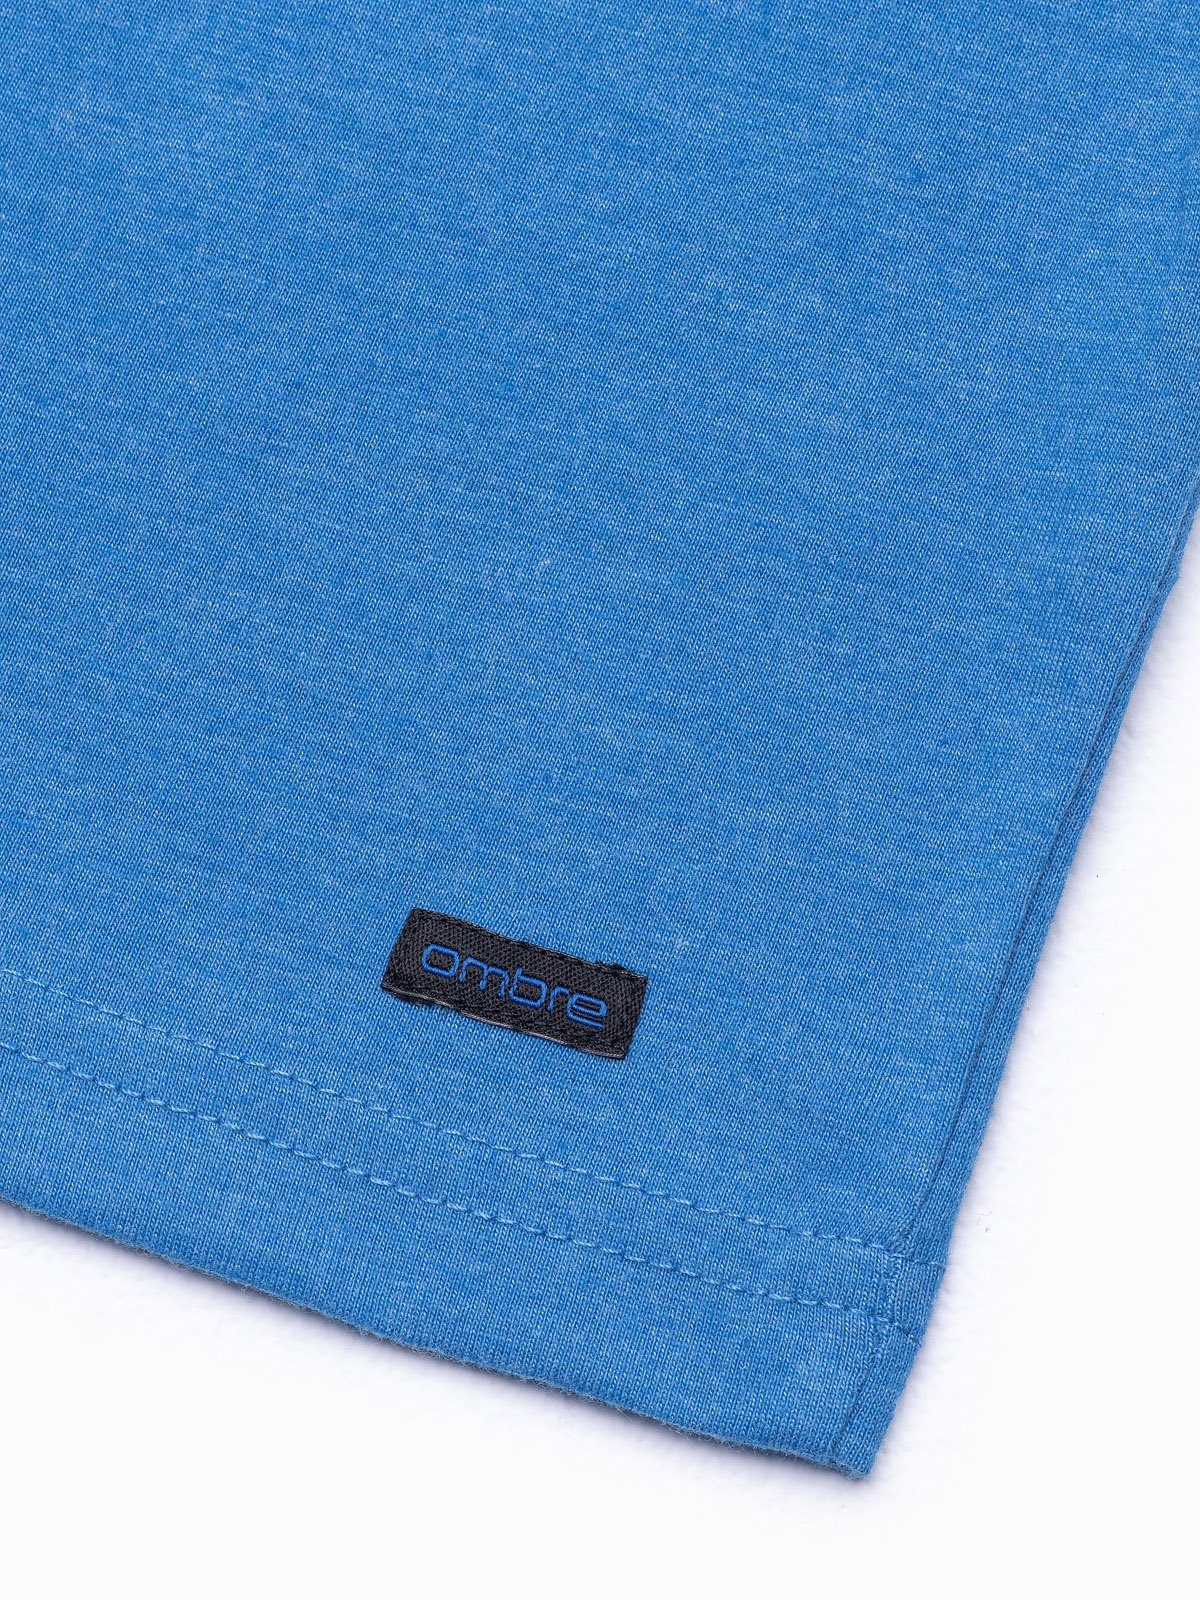 blau Unifarbenes S S1390 Herren-T-Shirt meliert OMBRE T-Shirt -